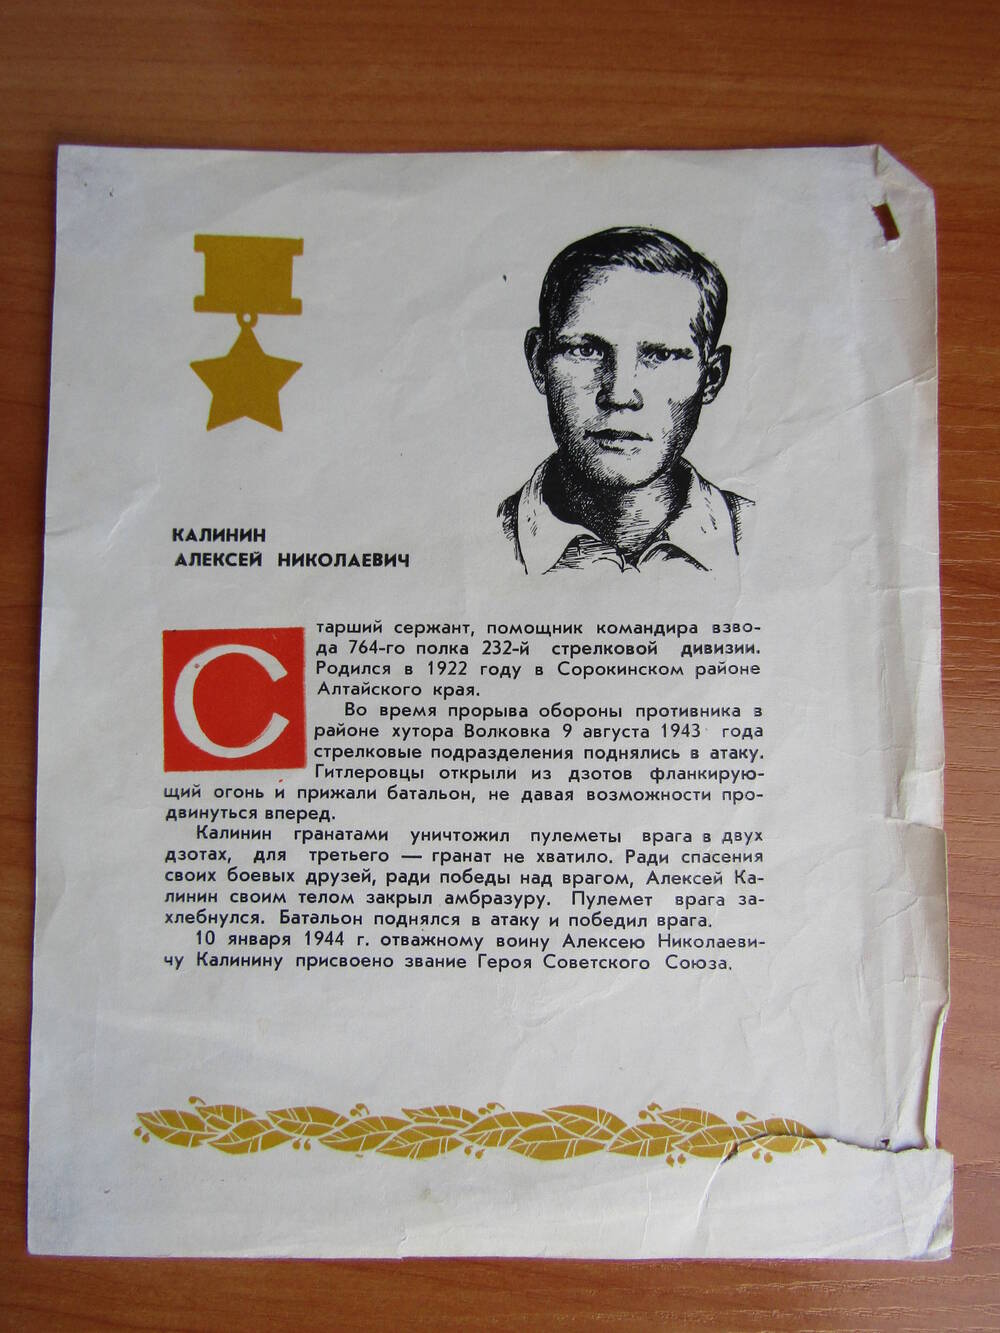 Буклет о ГСС А. Н. Калинине.